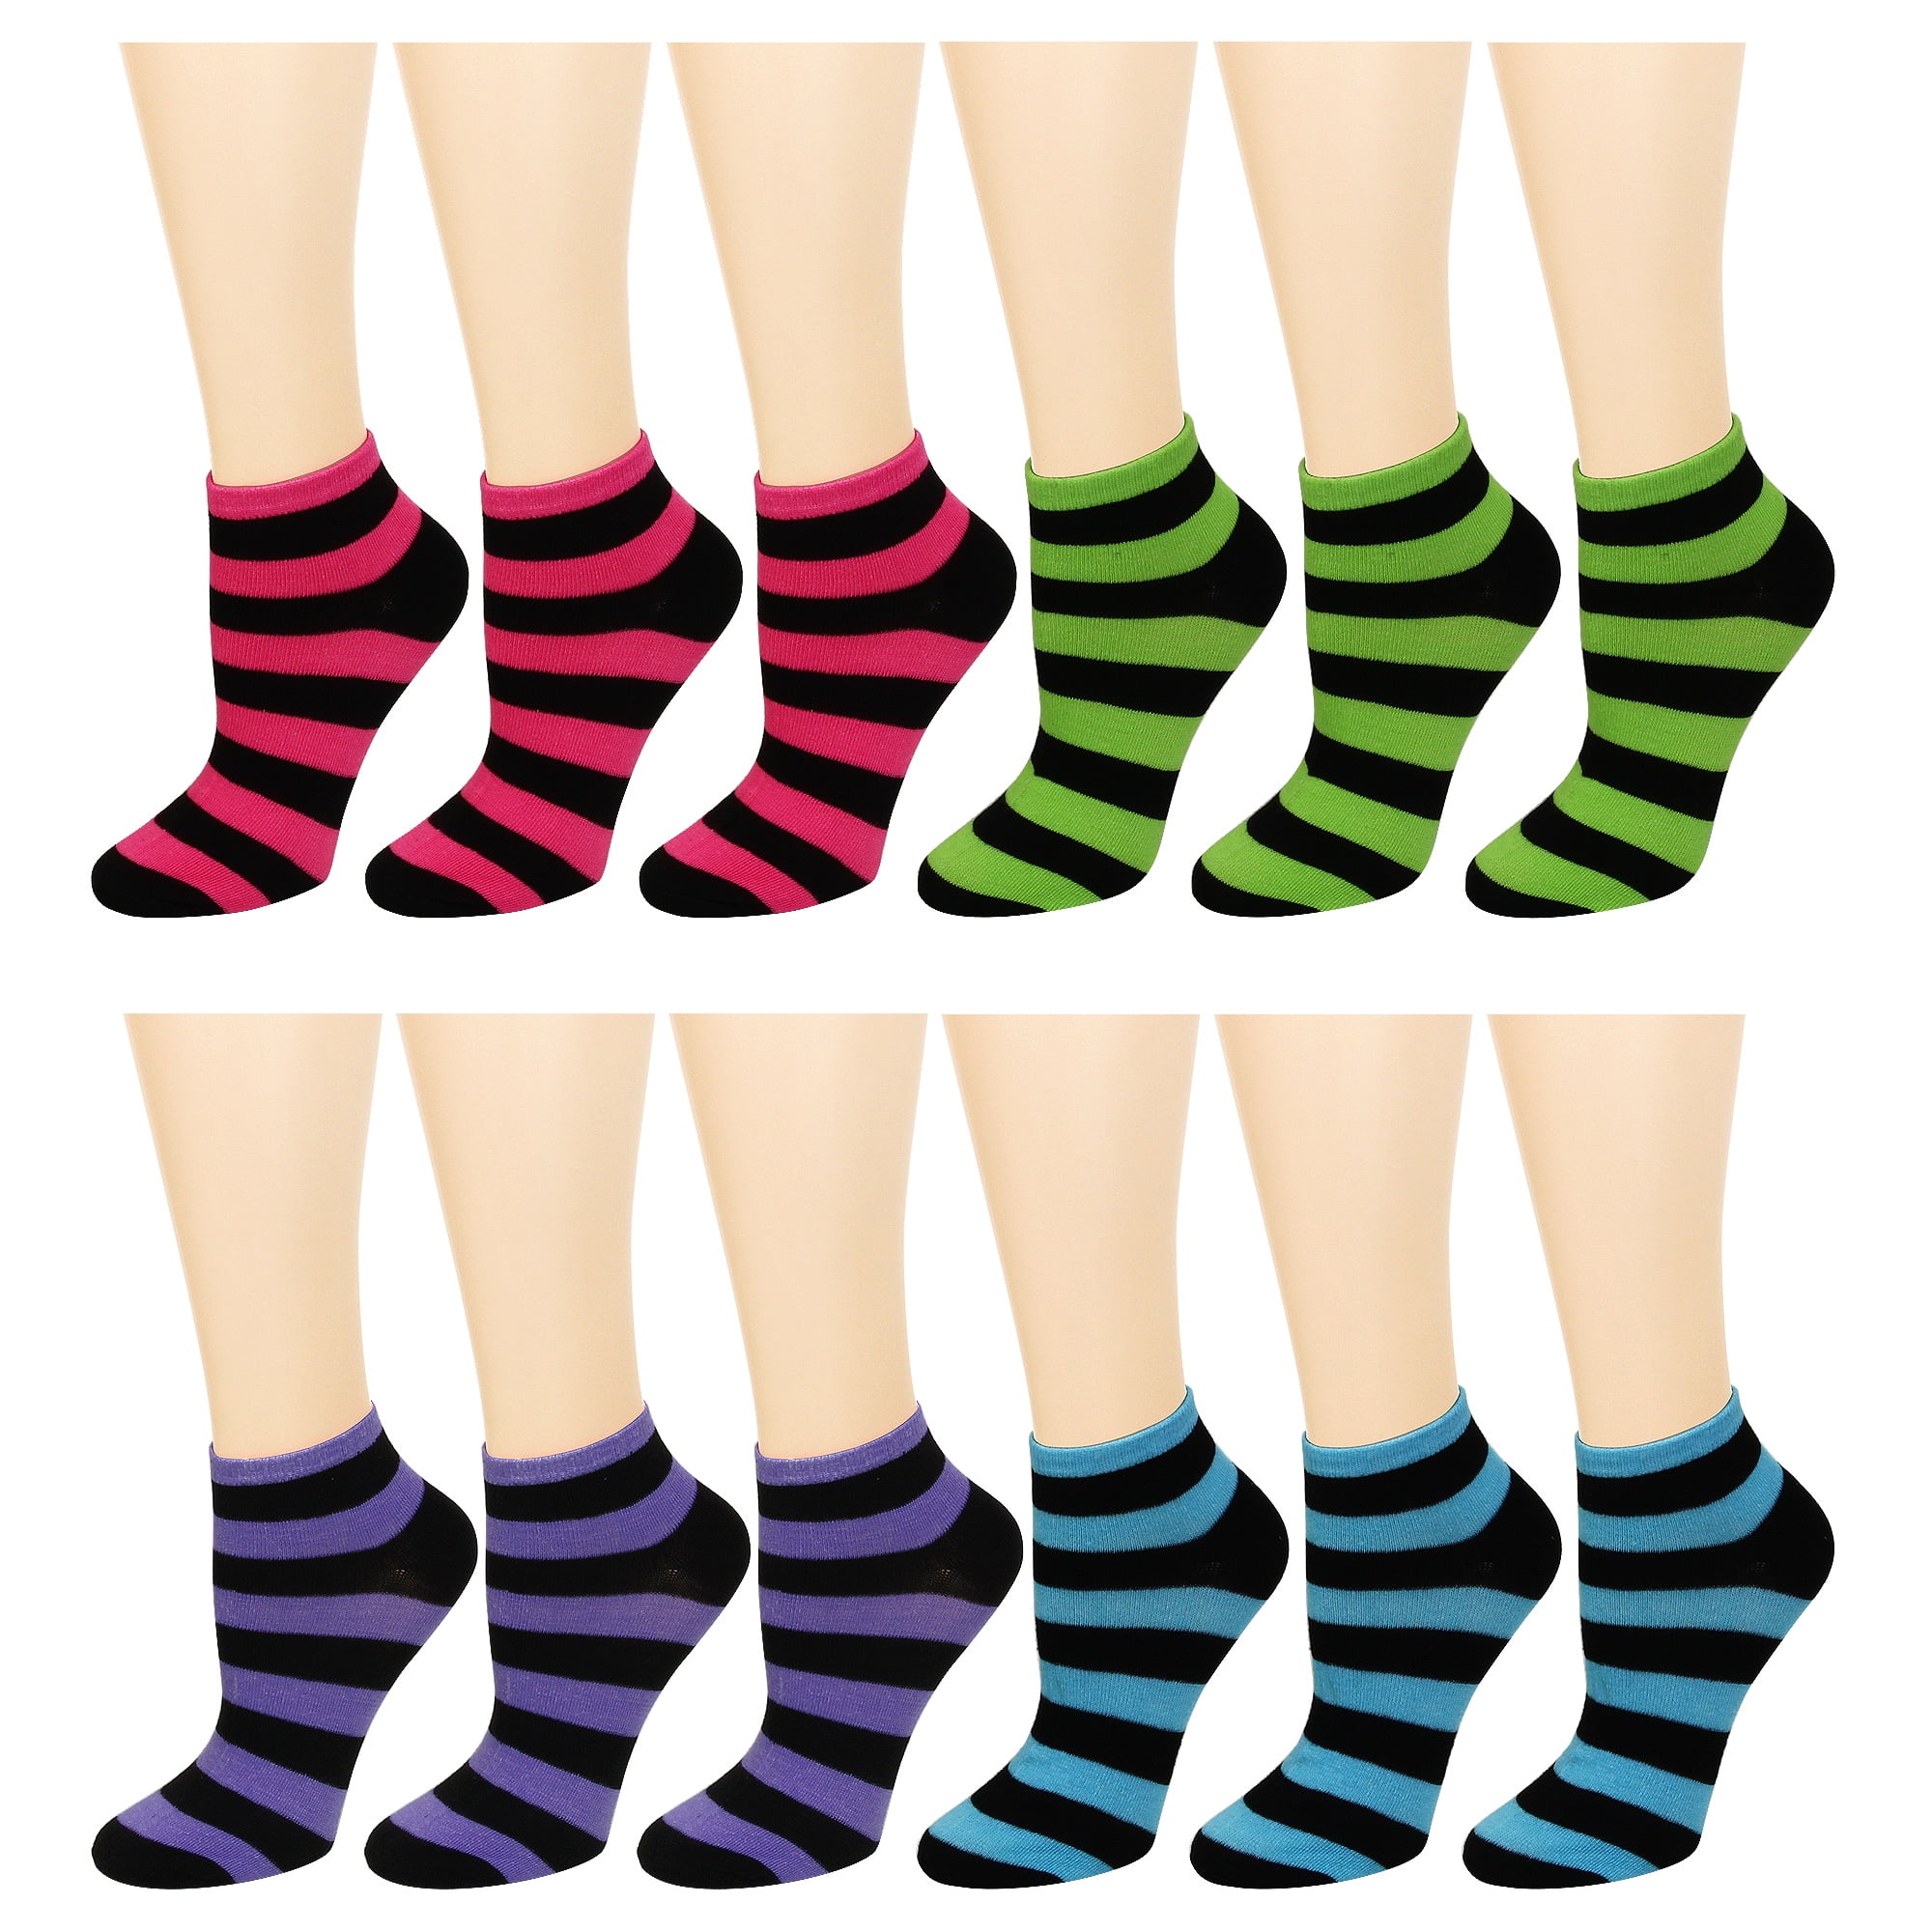 Ladies striped ankle socks